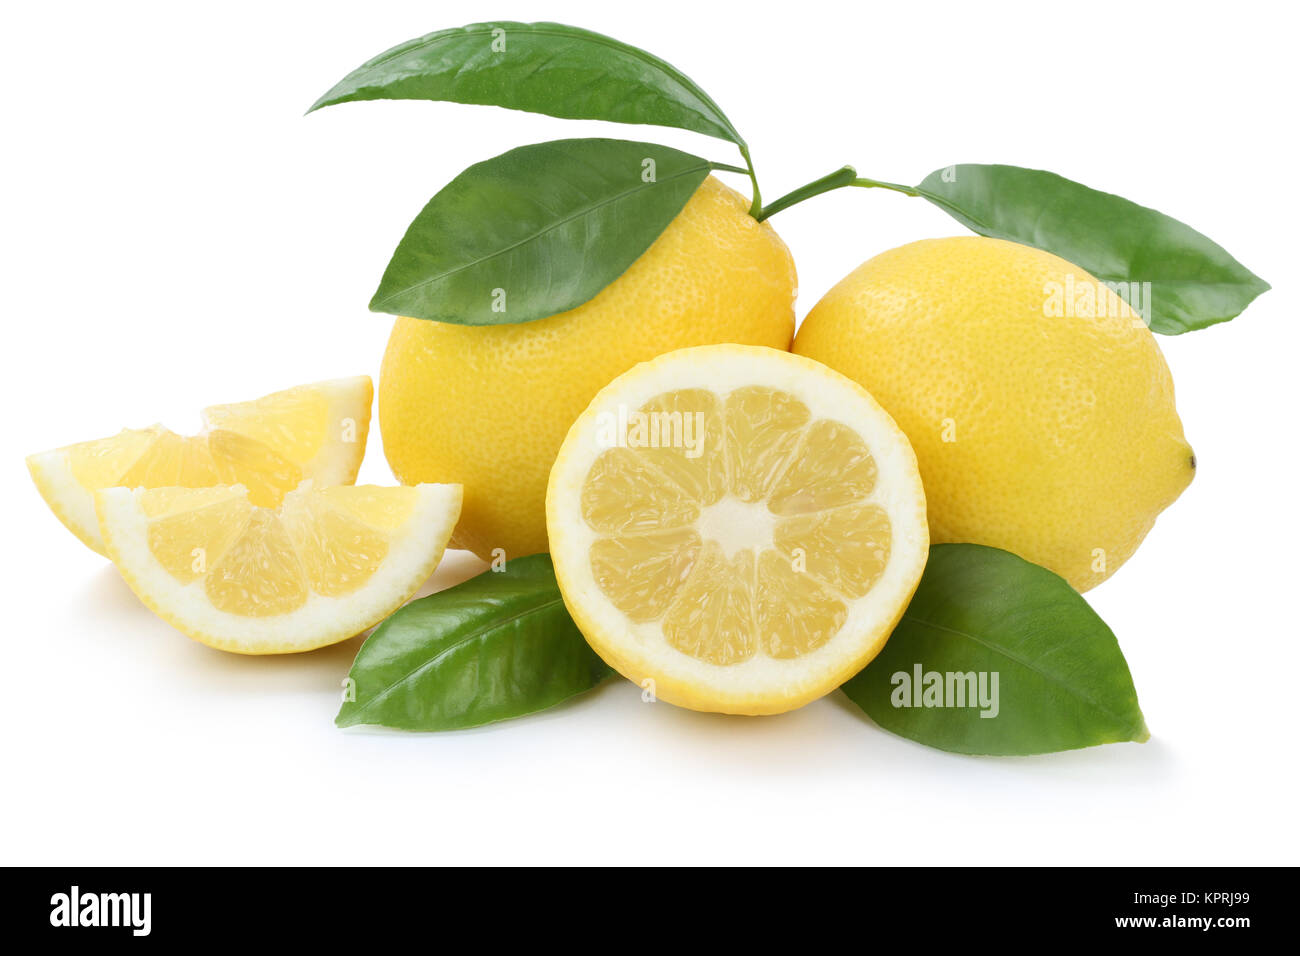 Zitrone Zitronen bio geschnitten Freisteller isoliert Photo Stock weissen freigestellt einem vor Hintergrund Alamy Früchte 